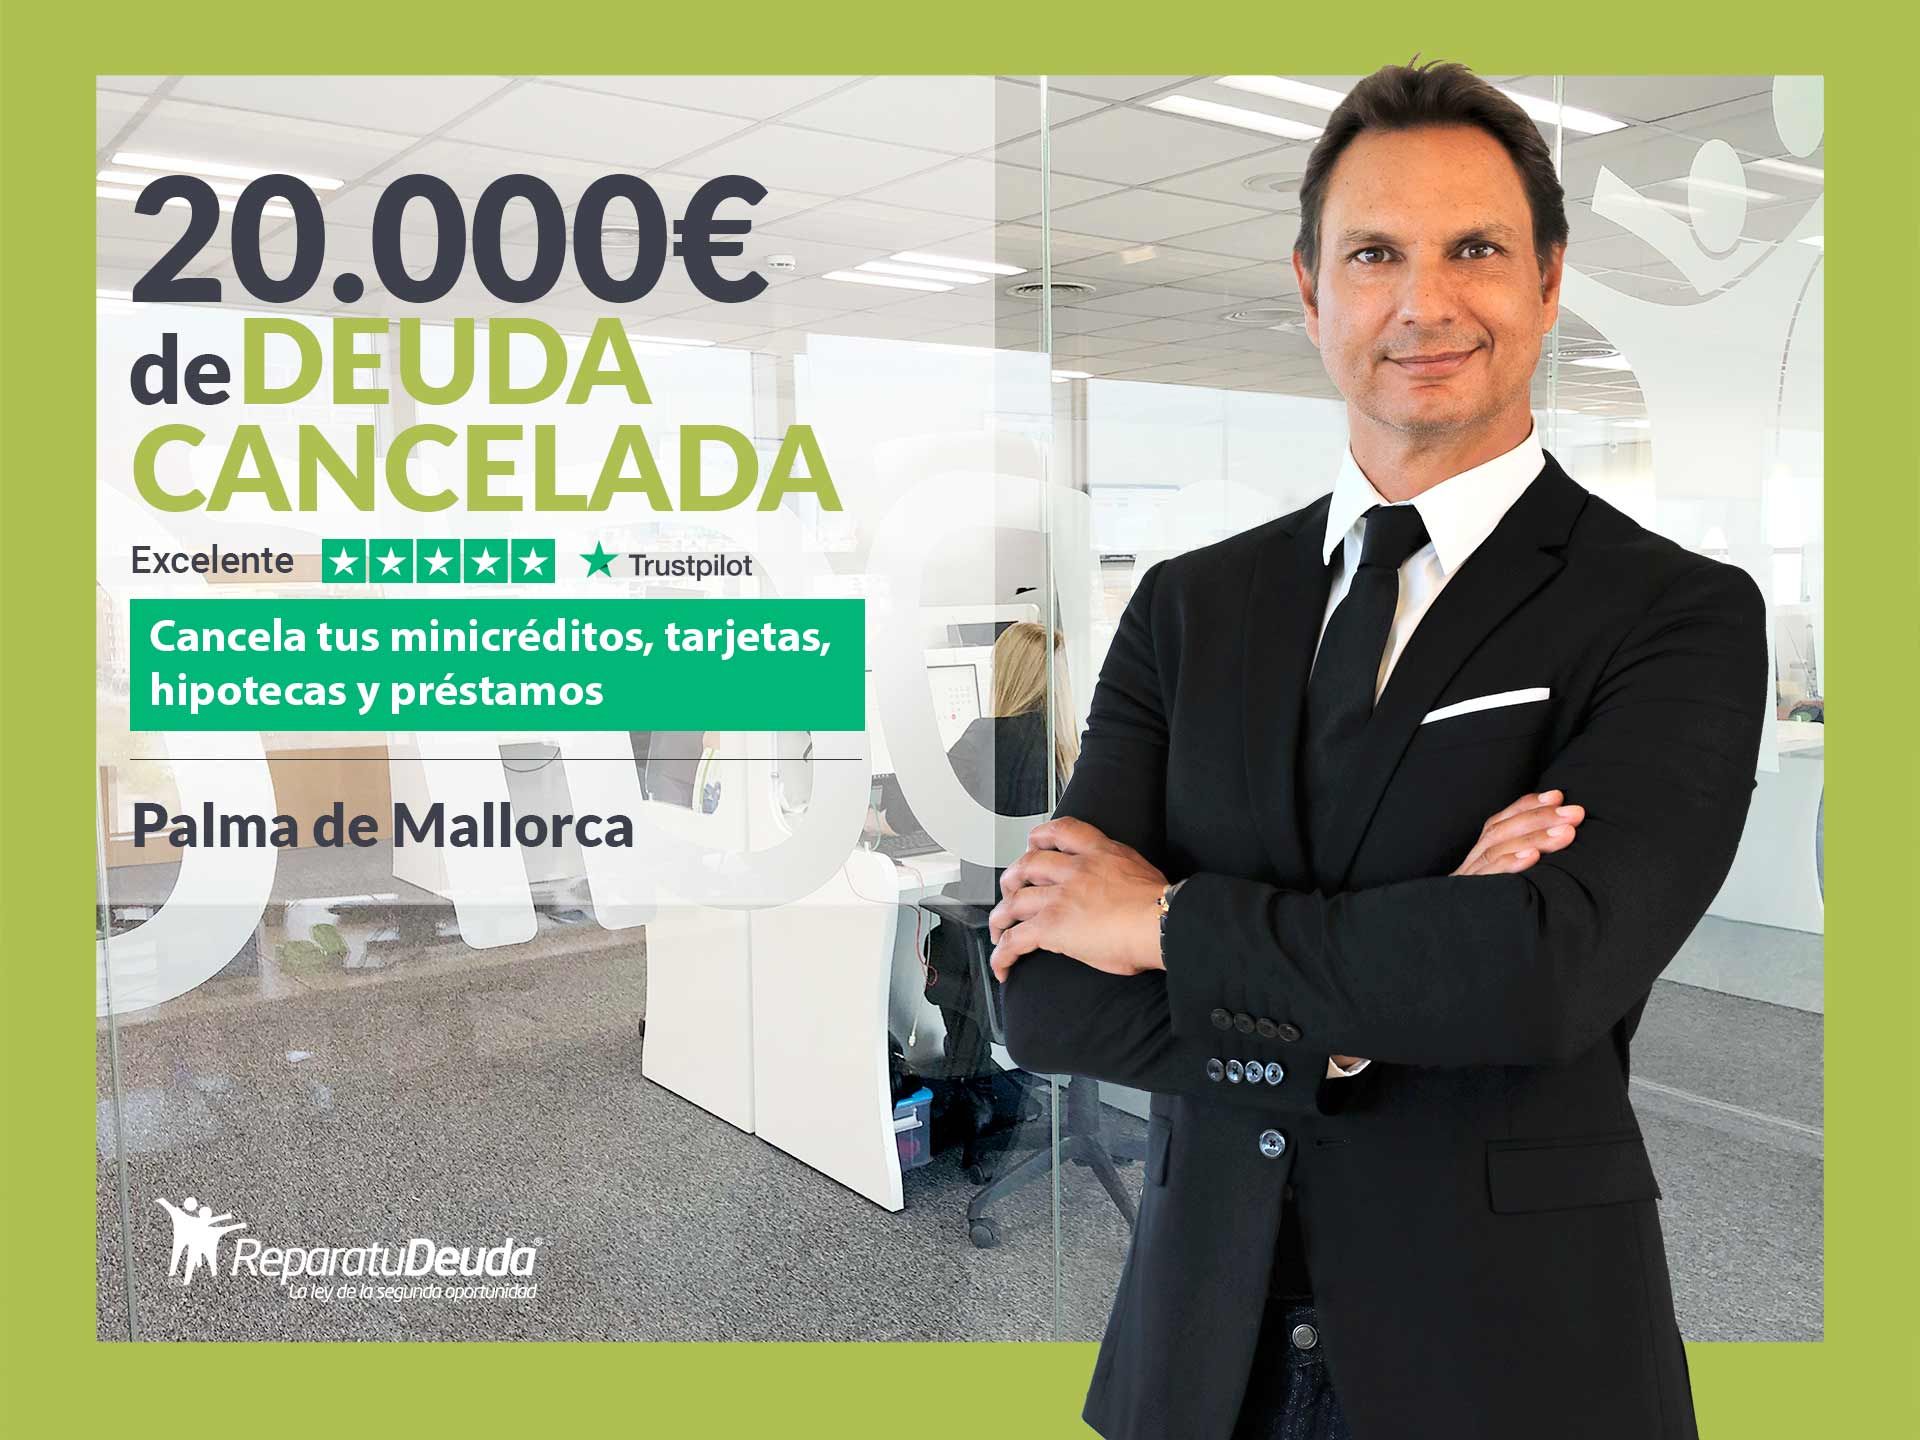 Repara tu Deuda Abogados cancela 20.000? en Palma de Mallorca (Baleares) con la Ley de Segunda Oportunidad